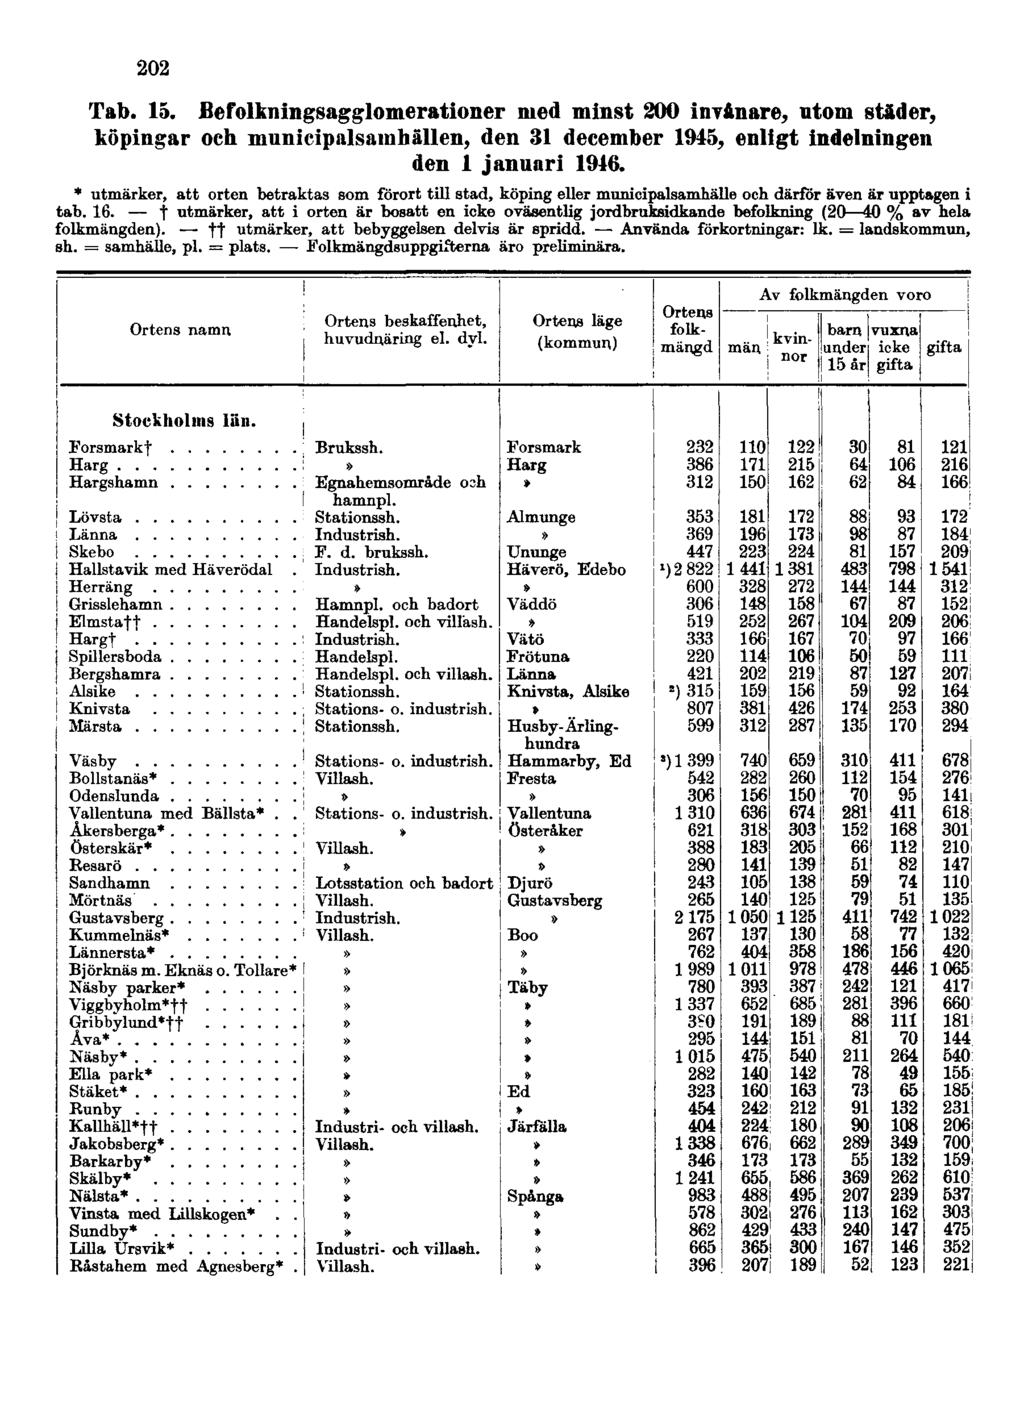 202 Tab. 15. Befolkningsagglomerationer med minst 200 invånare, utom städer, köpingar och municipalsamhällen, den 31 december 1945, enligt indelningen den 1 januari 1946.